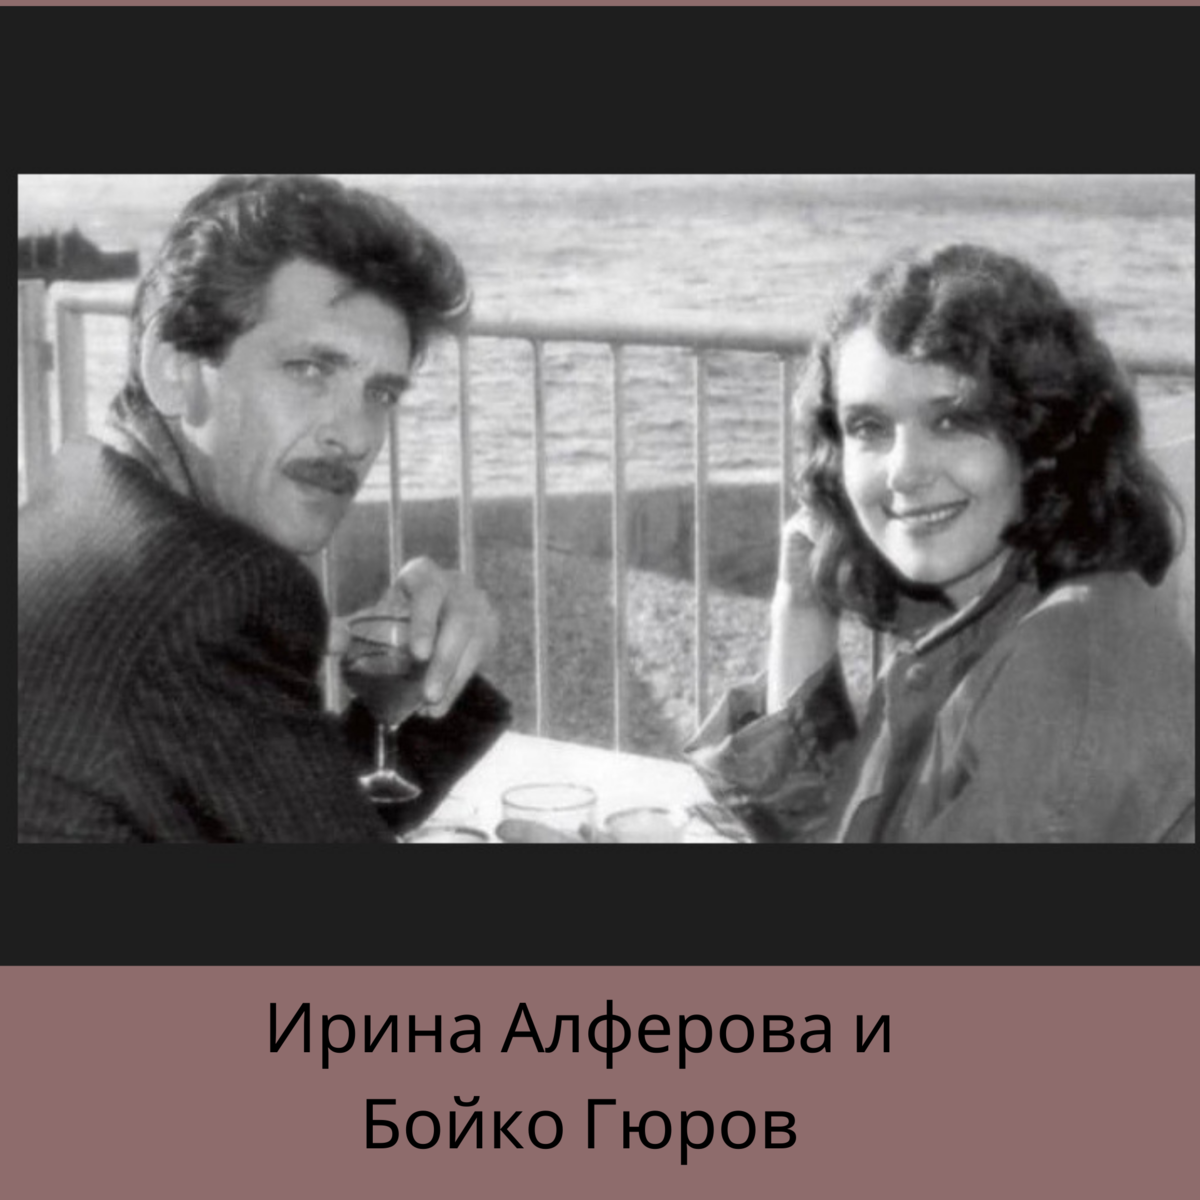 Бойко гюров и ирина алферова фото в молодости